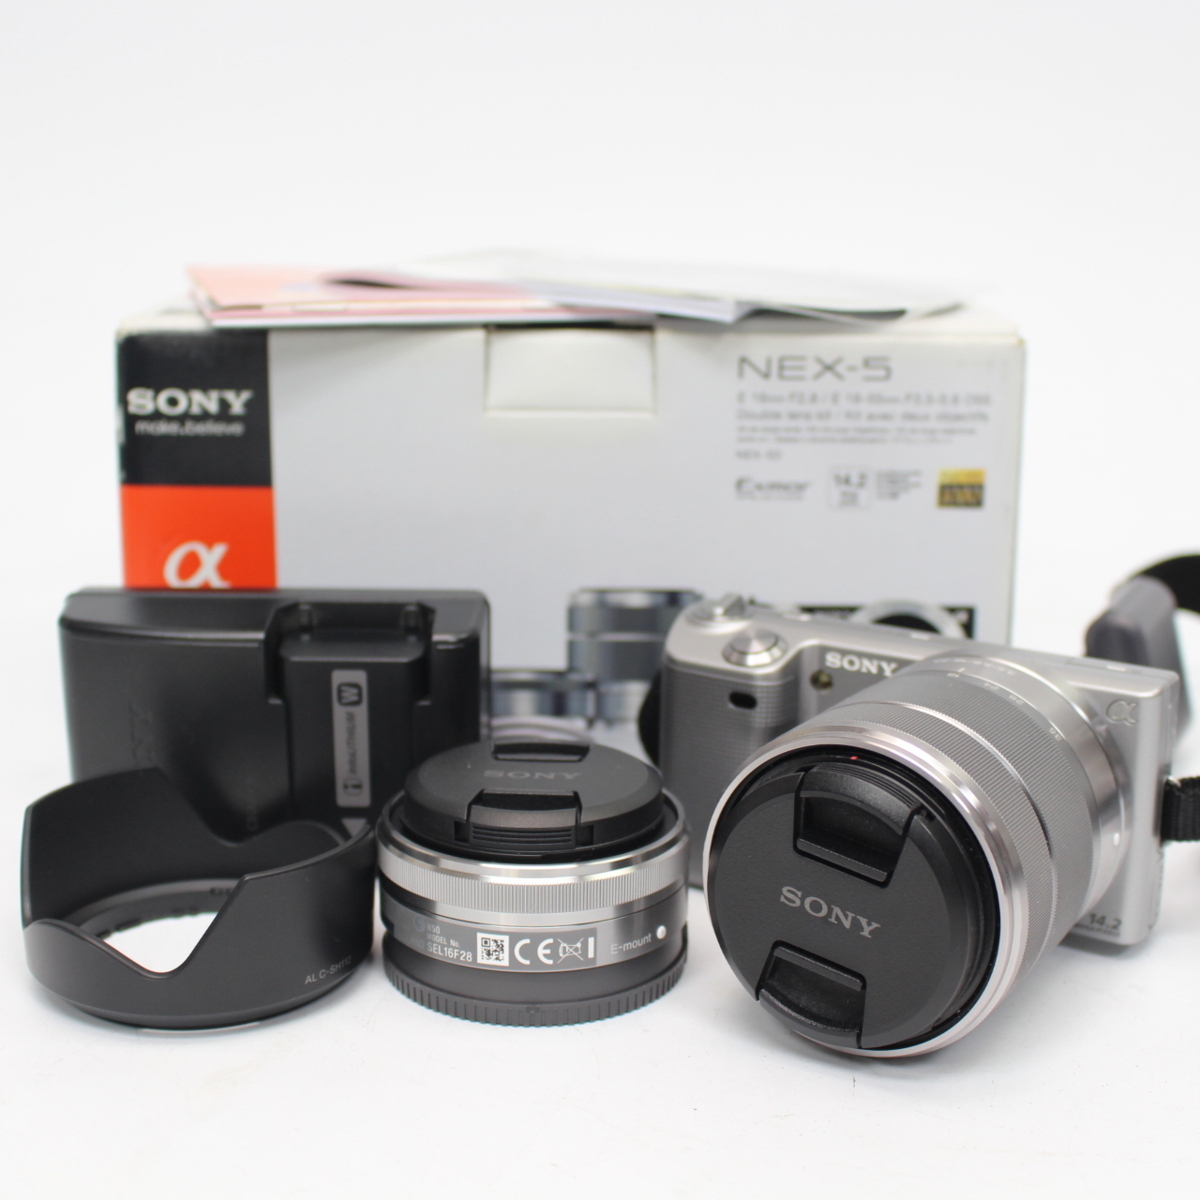 川崎市宮前区にて ソニー デジタル一眼レフカメラ NEX-5  を出張買取させて頂きました。